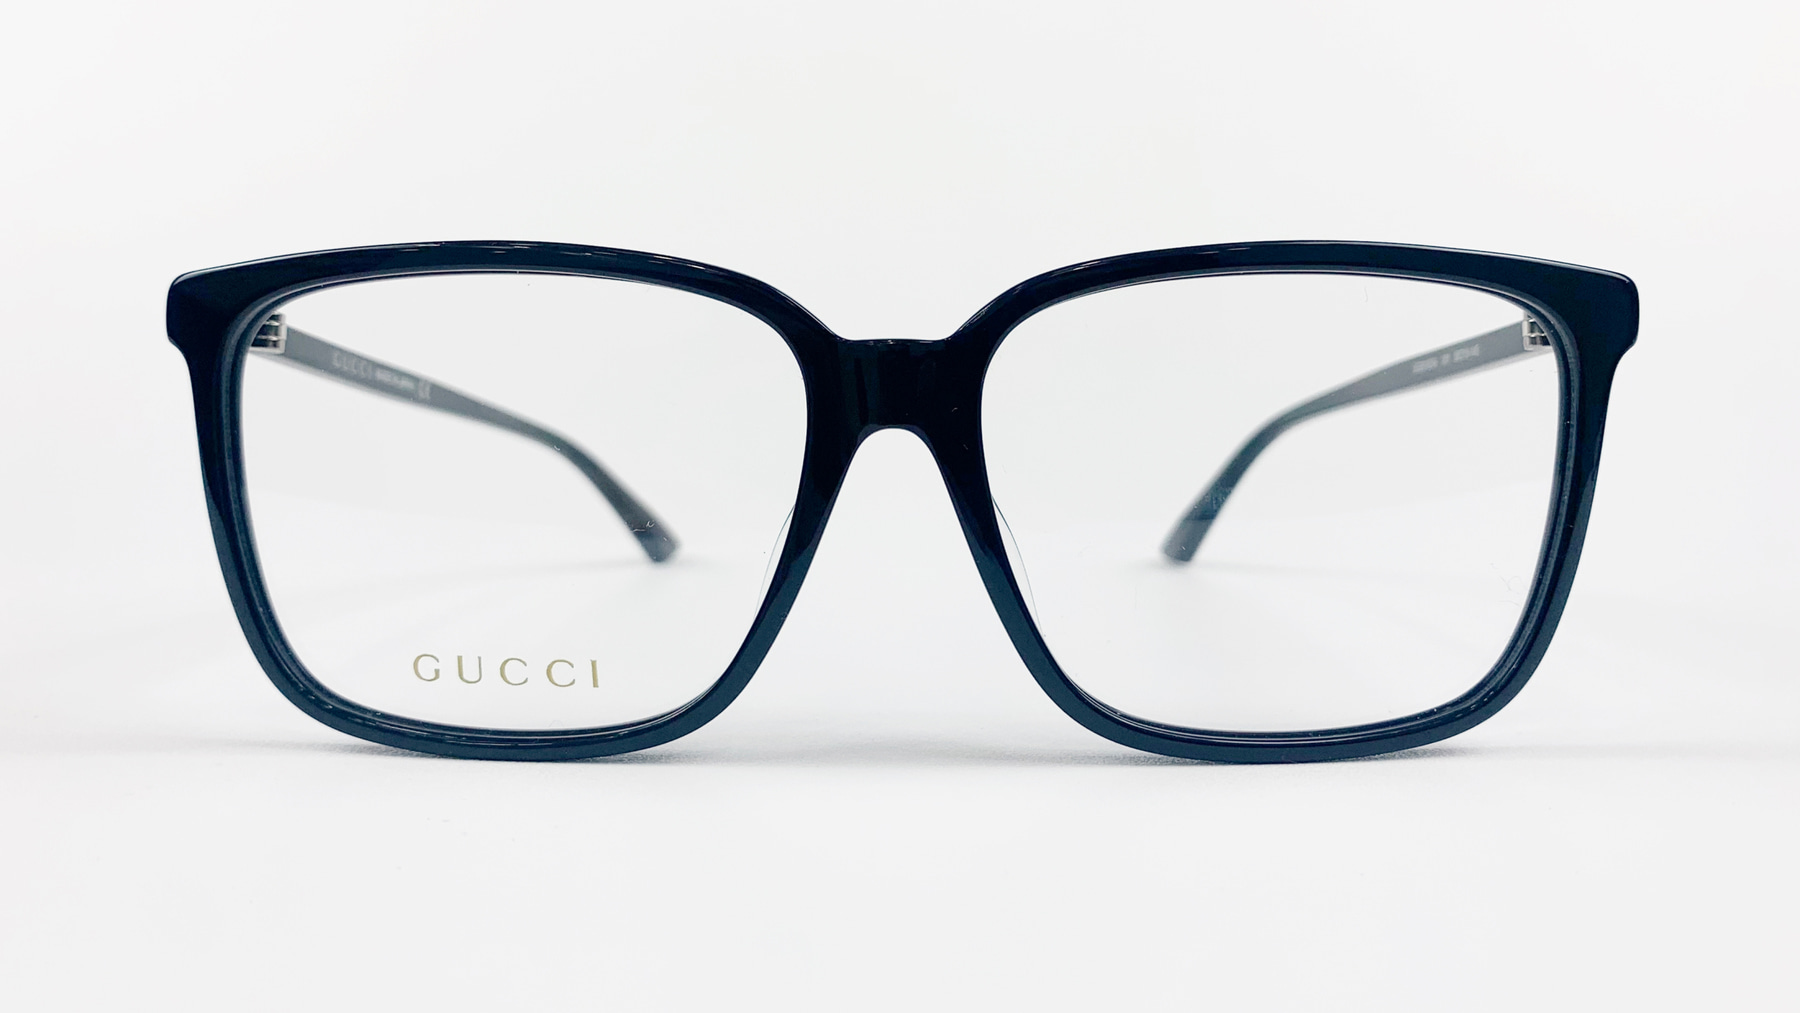 GUCCI GG00190A, Korean glasses, sunglasses, eyeglasses, glasses